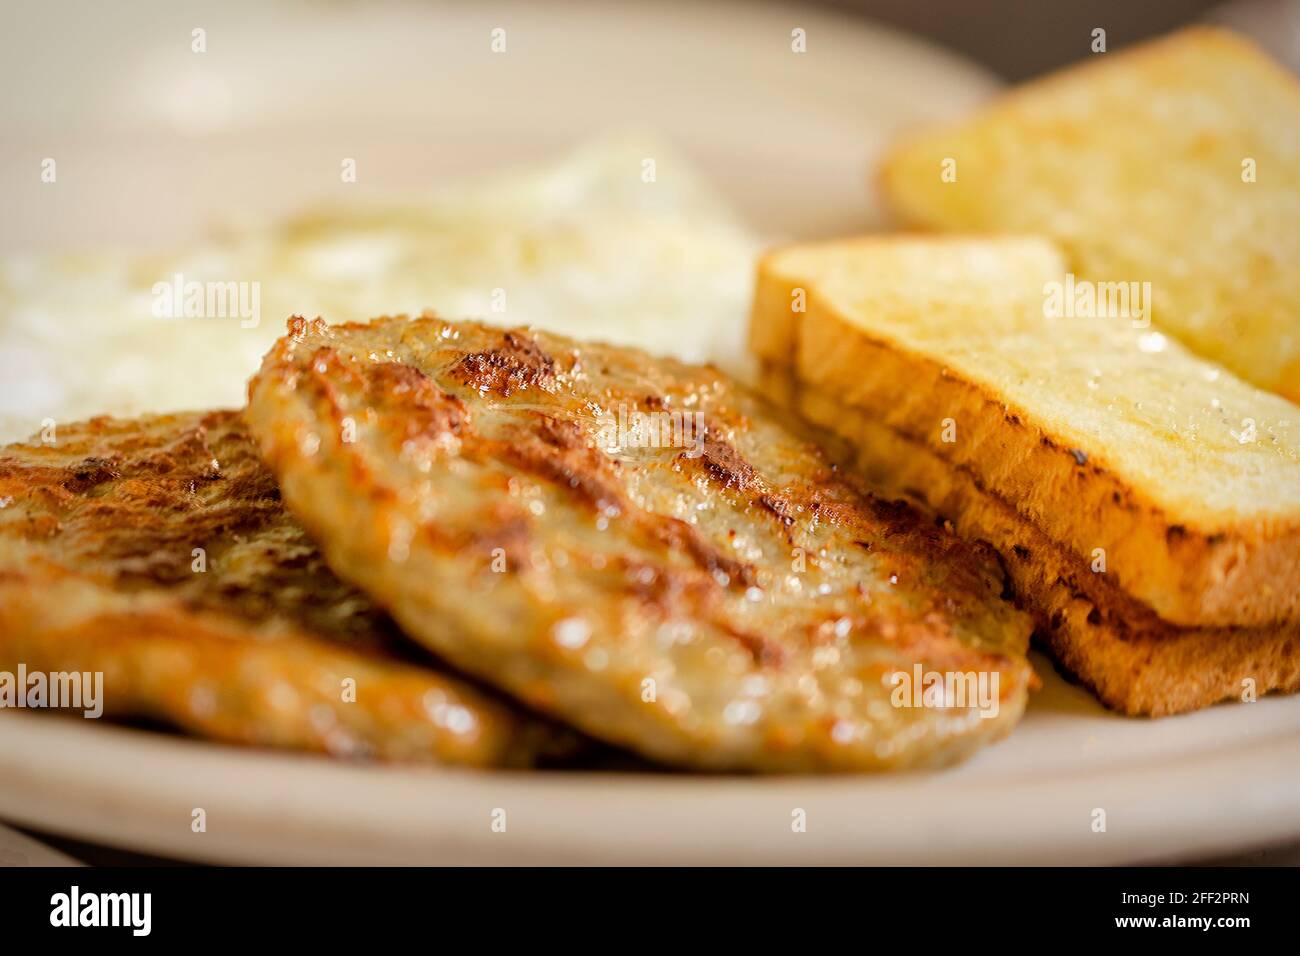 Un plat au petit-déjeuner comprenant 2 pâtés de saucisse de porc, deux piecesof de pain grillé blanc et 2 sur des œufs simples broutés en arrière-plan. Plaque blanche. Banque D'Images